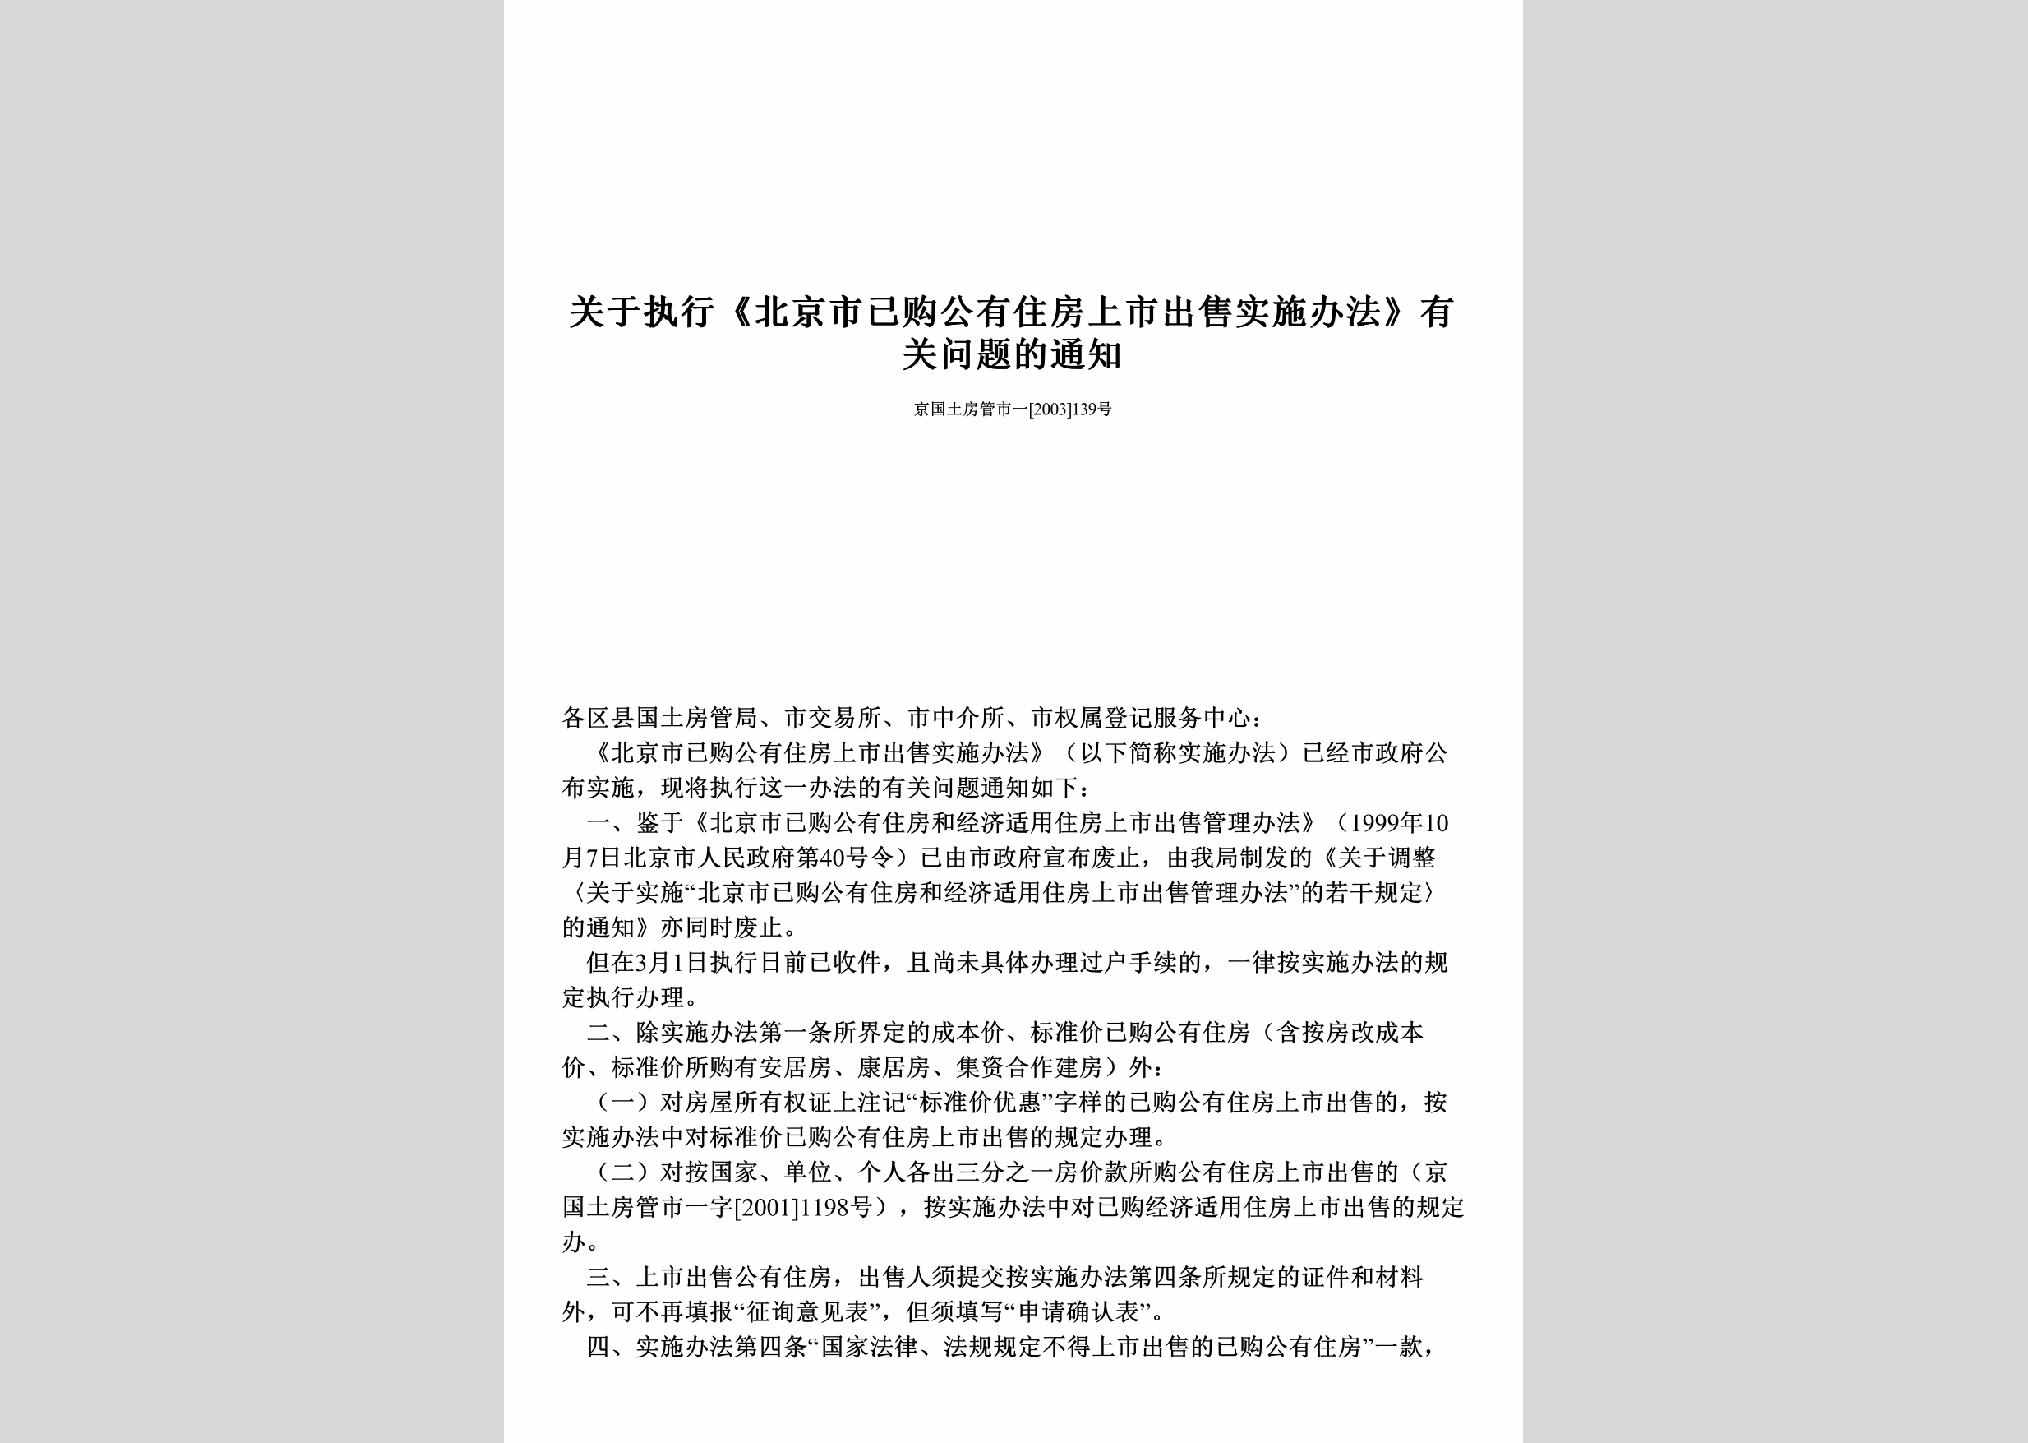 京国土房管市一[2003]139号：关于执行《北京市已购公有住房上市出售实施办法》有关问题的通知